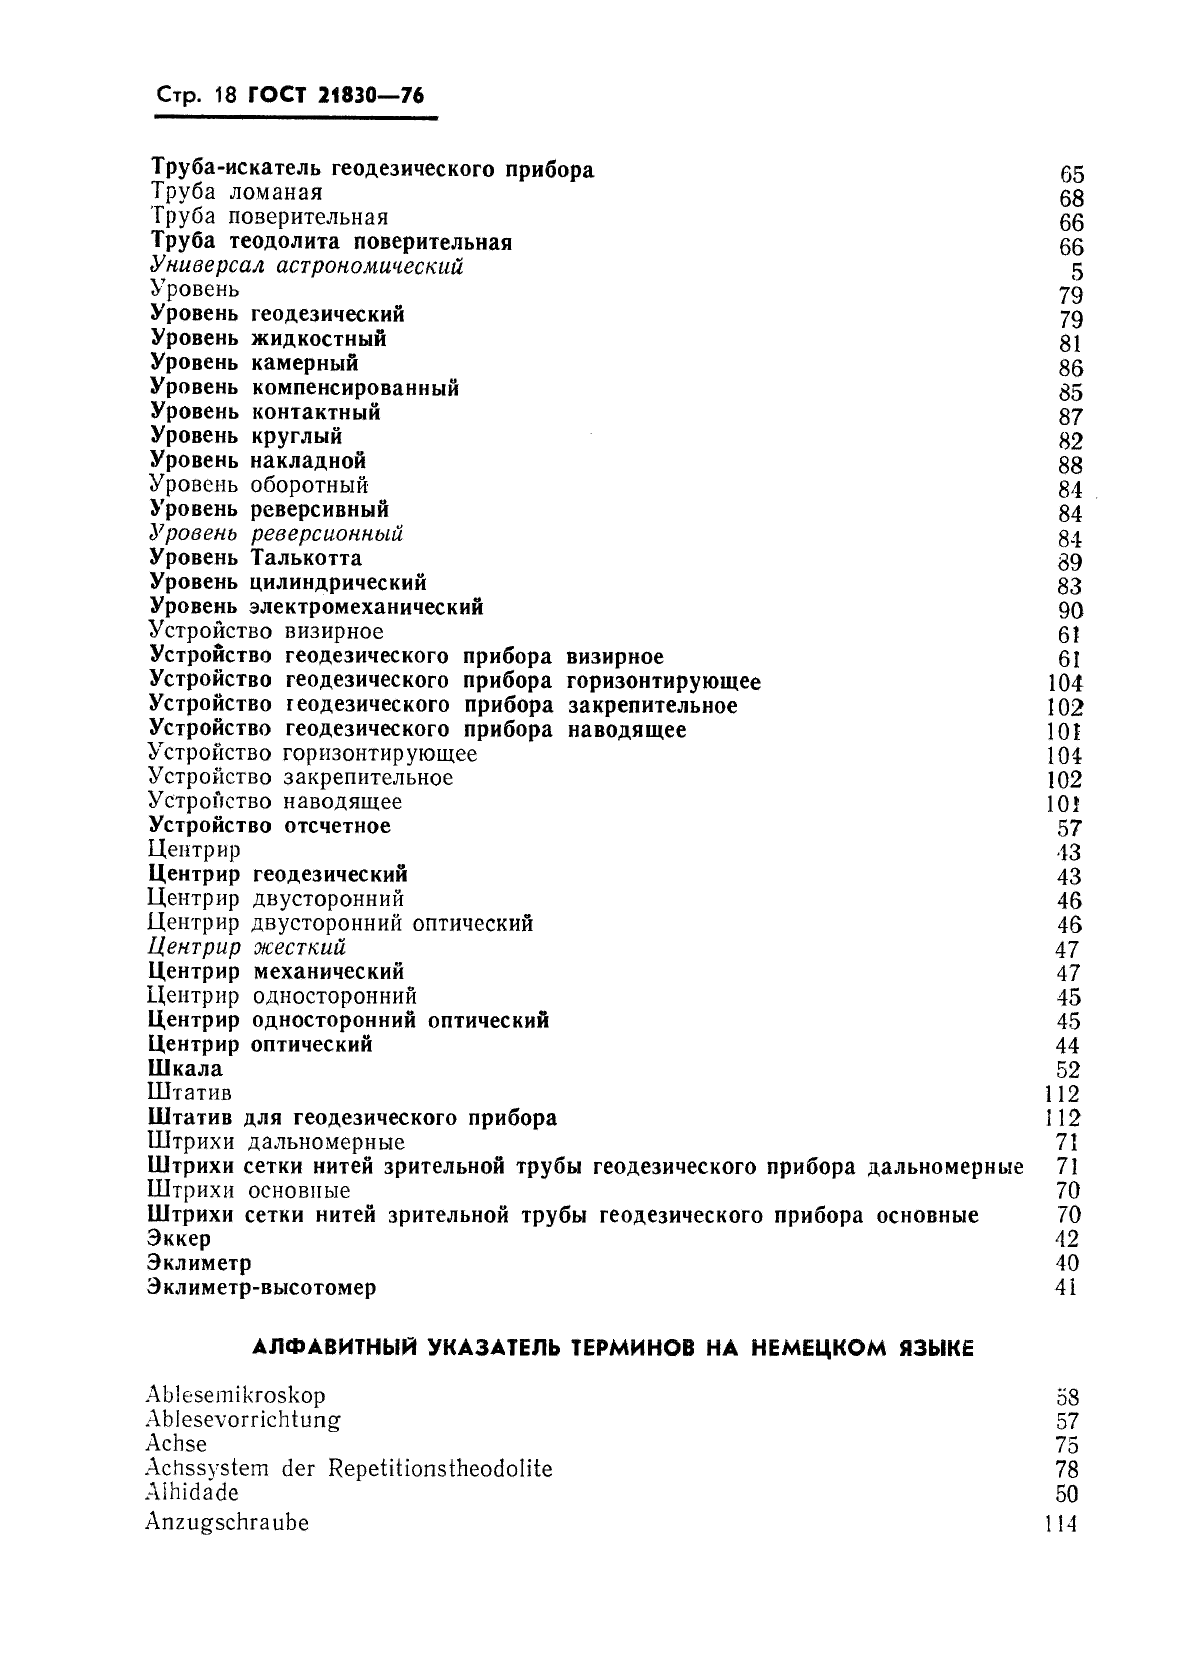 ГОСТ 21830-76 Приборы геодезические. Термины и определения (фото 19 из 27)